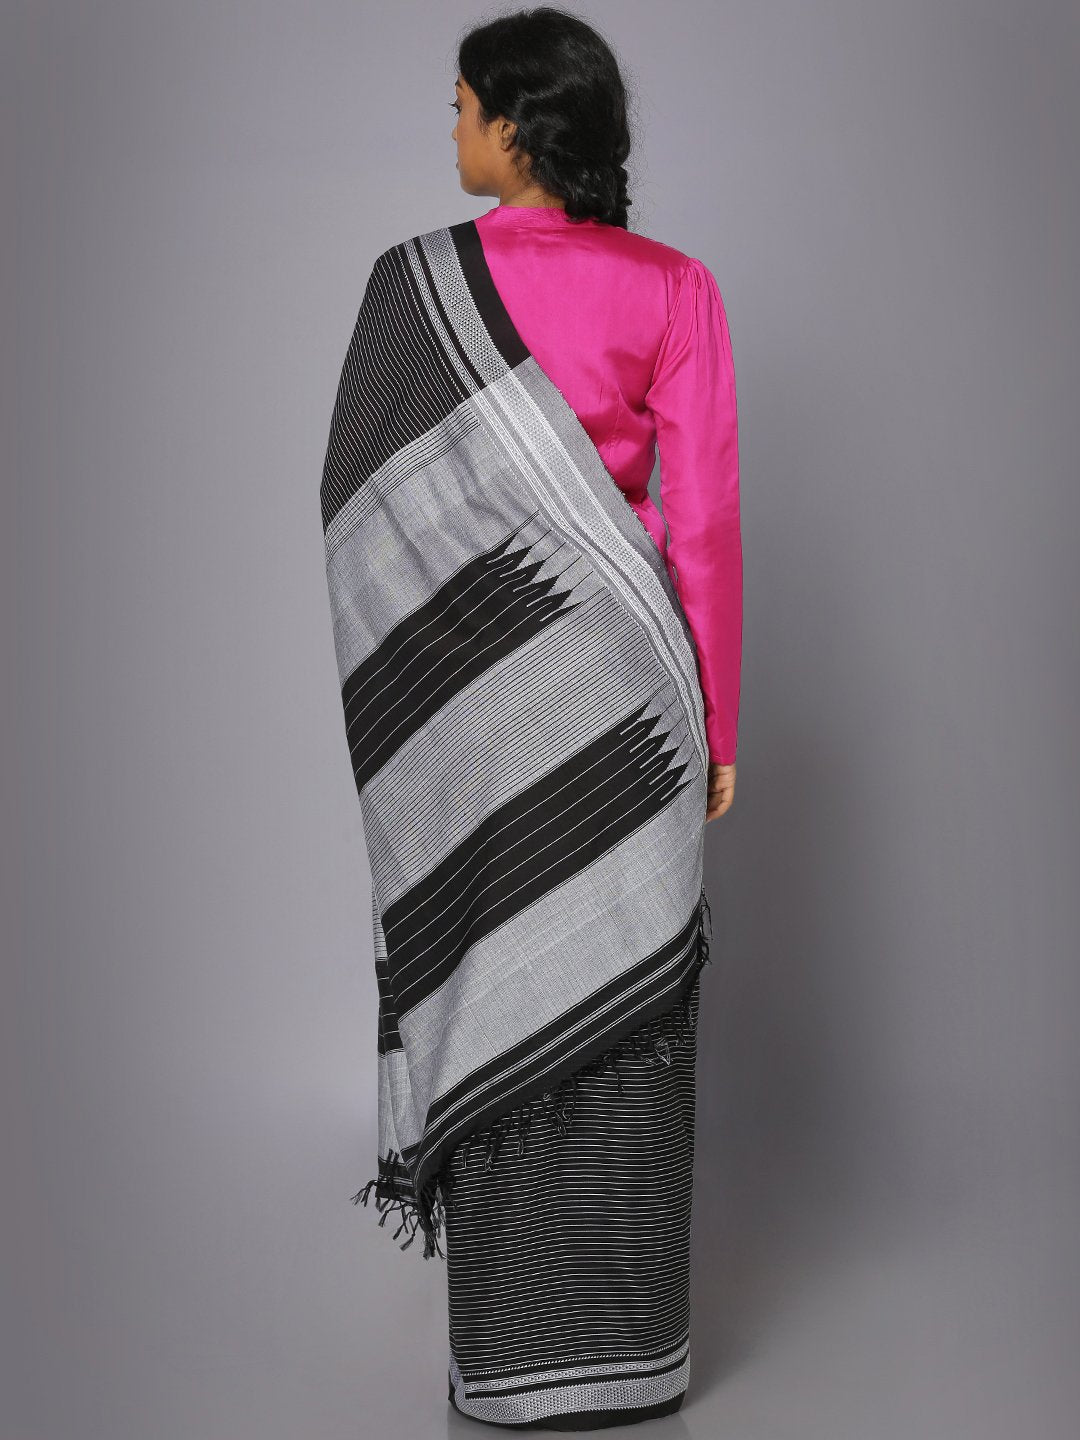 Black & white ilkal cotton saree